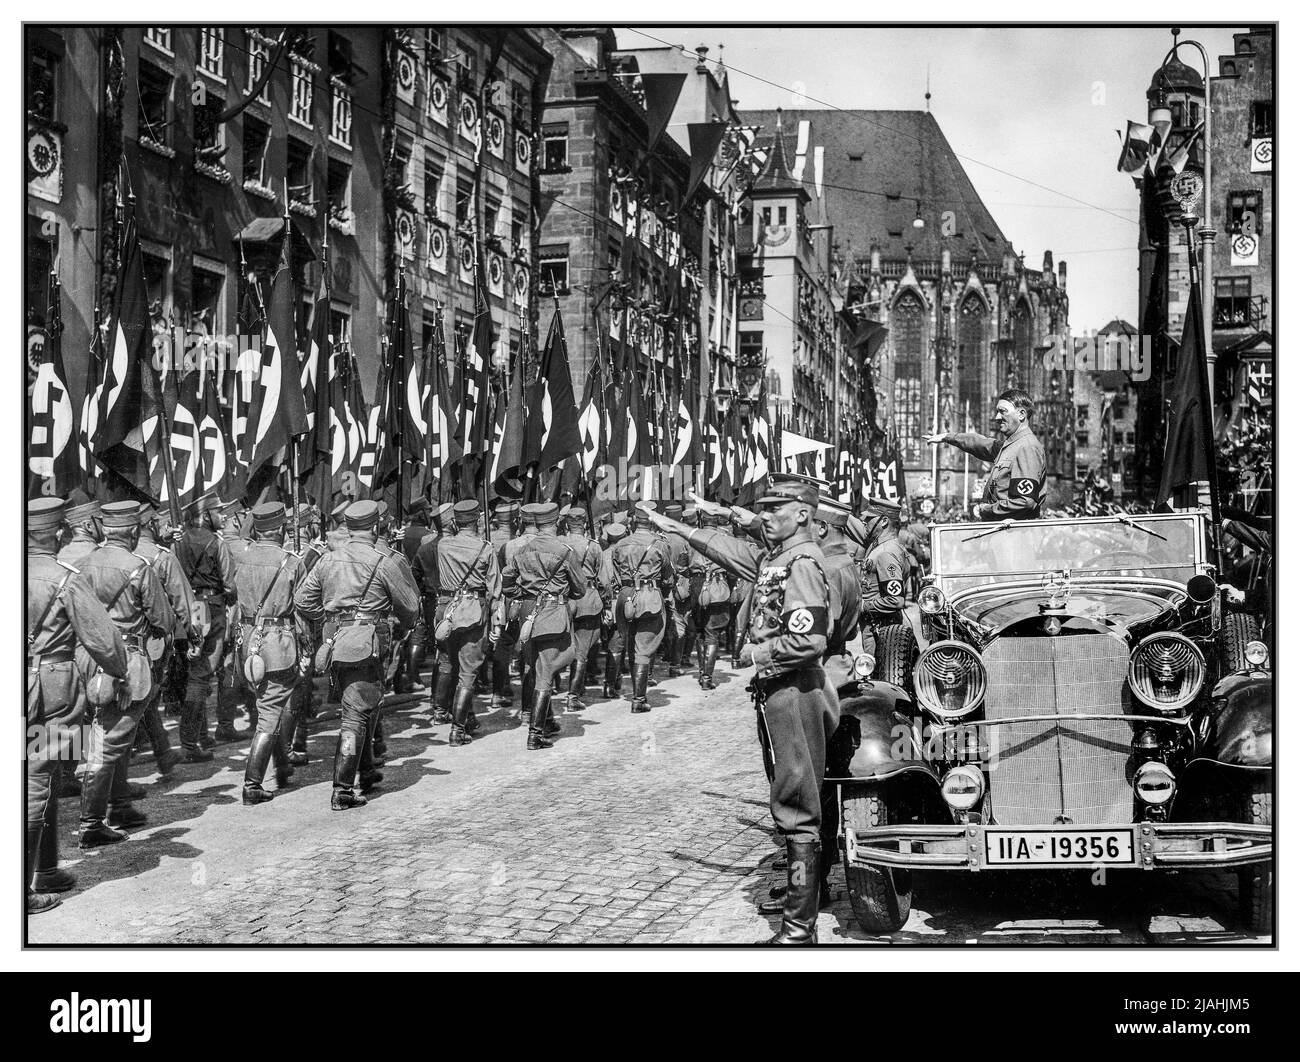 Nürnberger SA-Kundgebung 1930s mit Adolf Hitler, der in seinem Mercedes-Benz 770 steht, während der Nürnberger Kundgebung 1935, dem NSDAP-Kongress 7., der vom 10. Bis 16. September in Nürnberg stattfand, die SA-Mitglieder in einer Parade begutachten. Hitler wird begleitet von der Blutfahne, ("Blutflagge", zeremonielle Hakenkreuzflagge) und ihrem Träger SS-Sturmbannführer Jakob Grimminger. Stockfoto